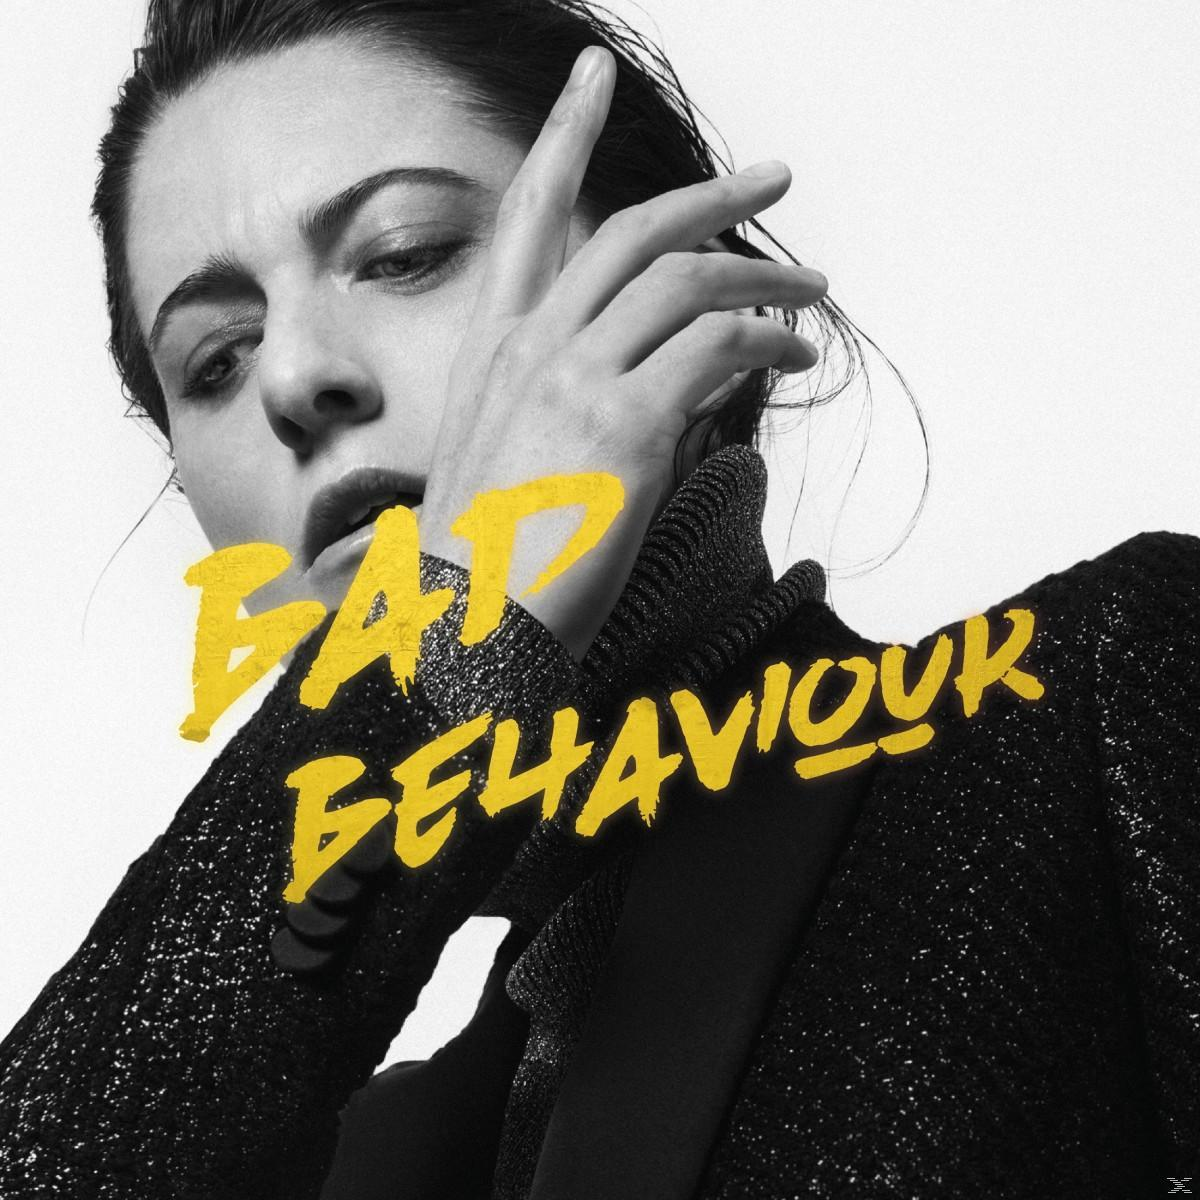 Behaviour - Bad Frankie (CD) Kat -